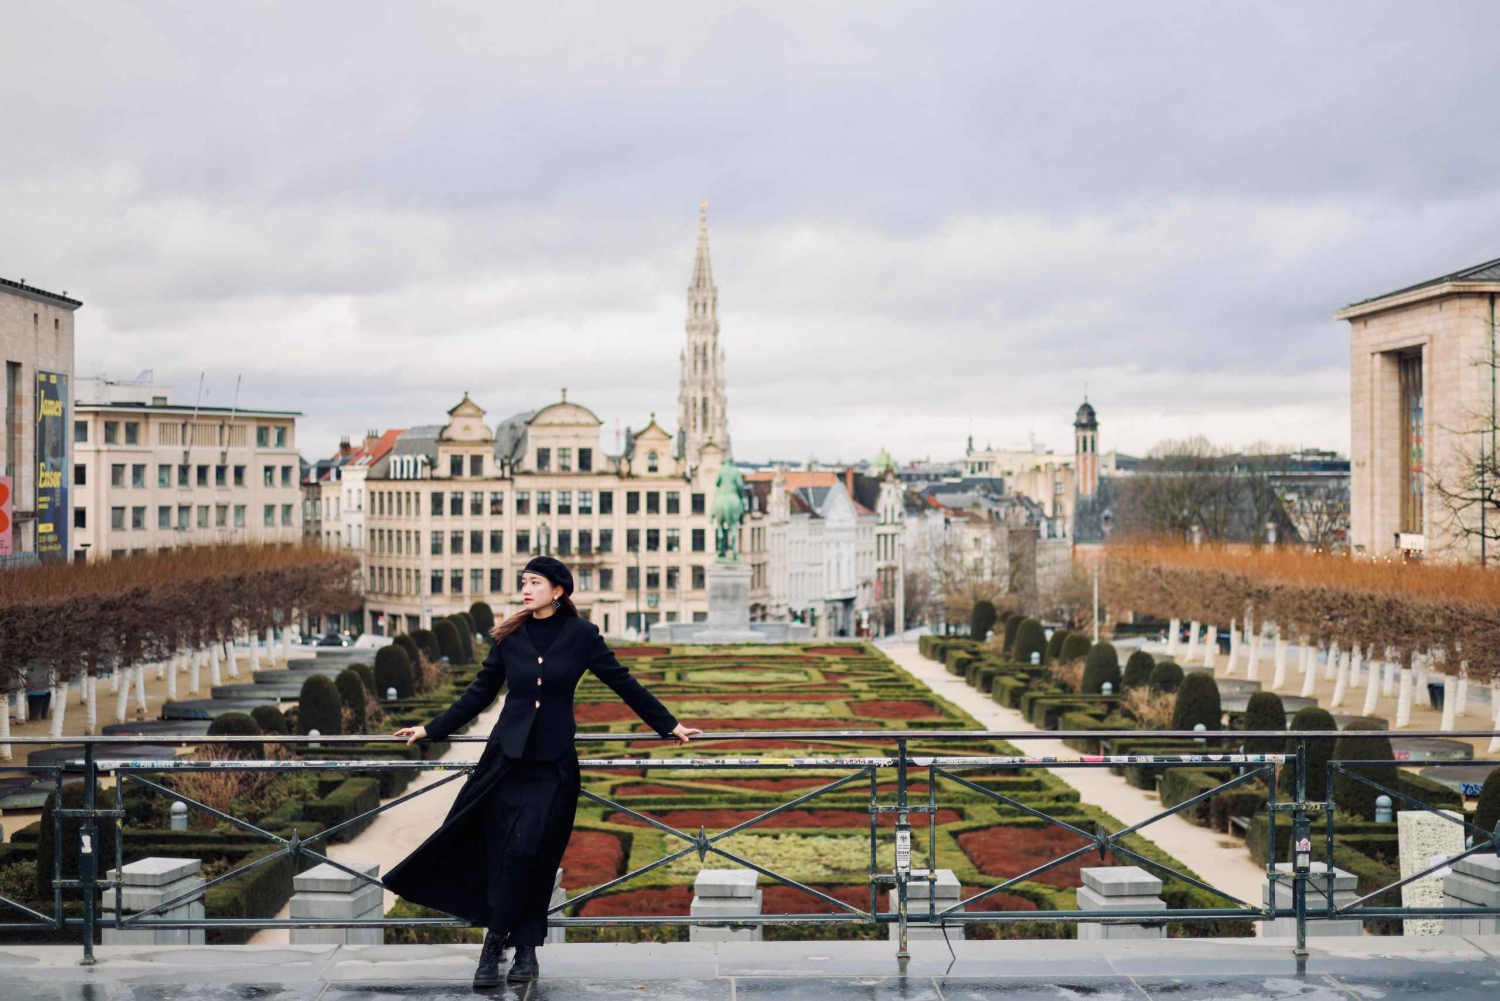 Servizio fotografico della città di Bruges con un fotografo professionista